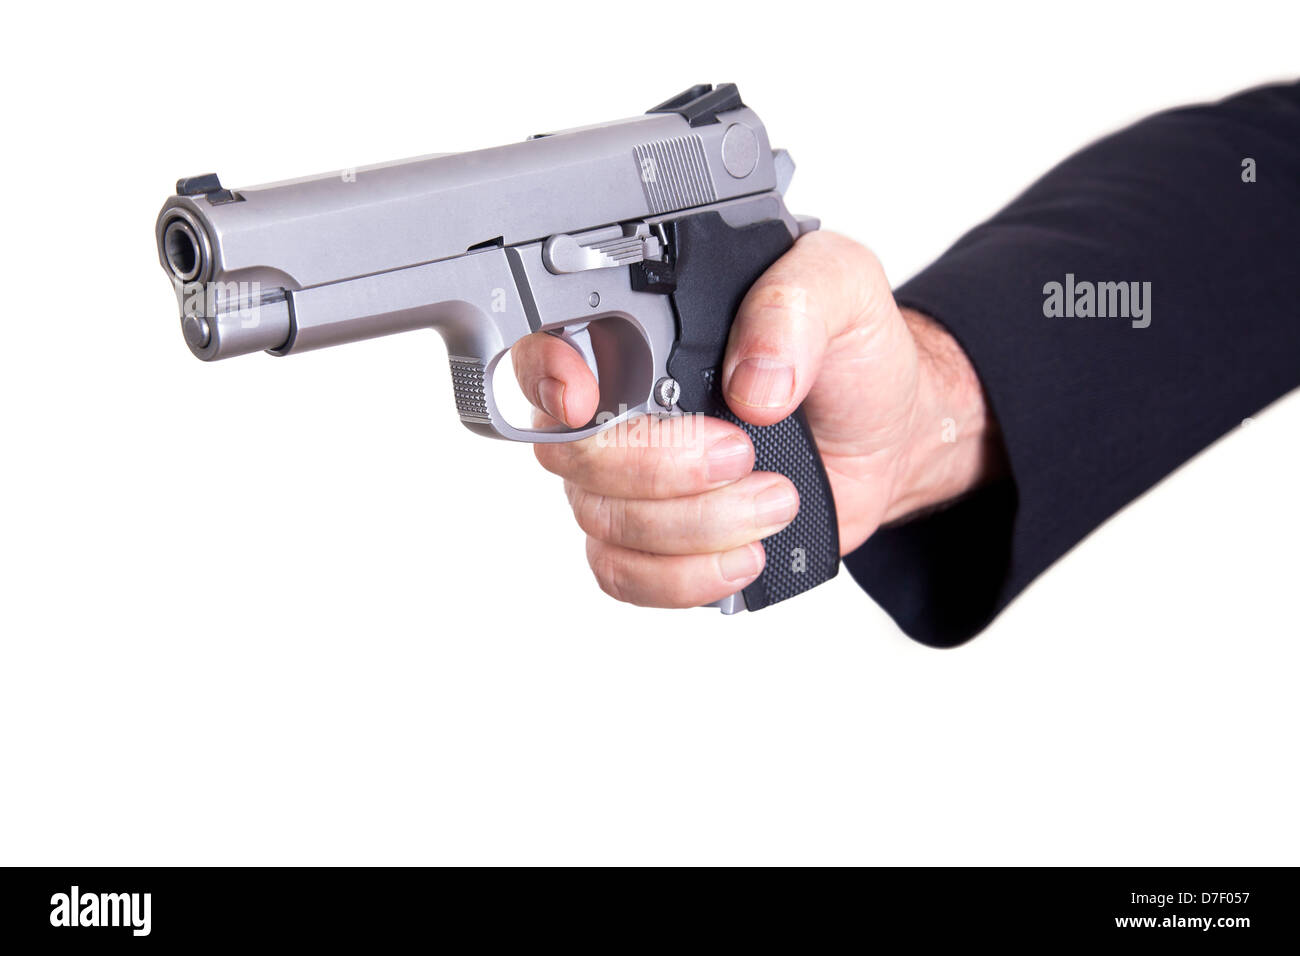 Le côté adulte mature man wearing suit holding 9mm arme deux mains visant à cibler. Isolé sur fond blanc. Banque D'Images